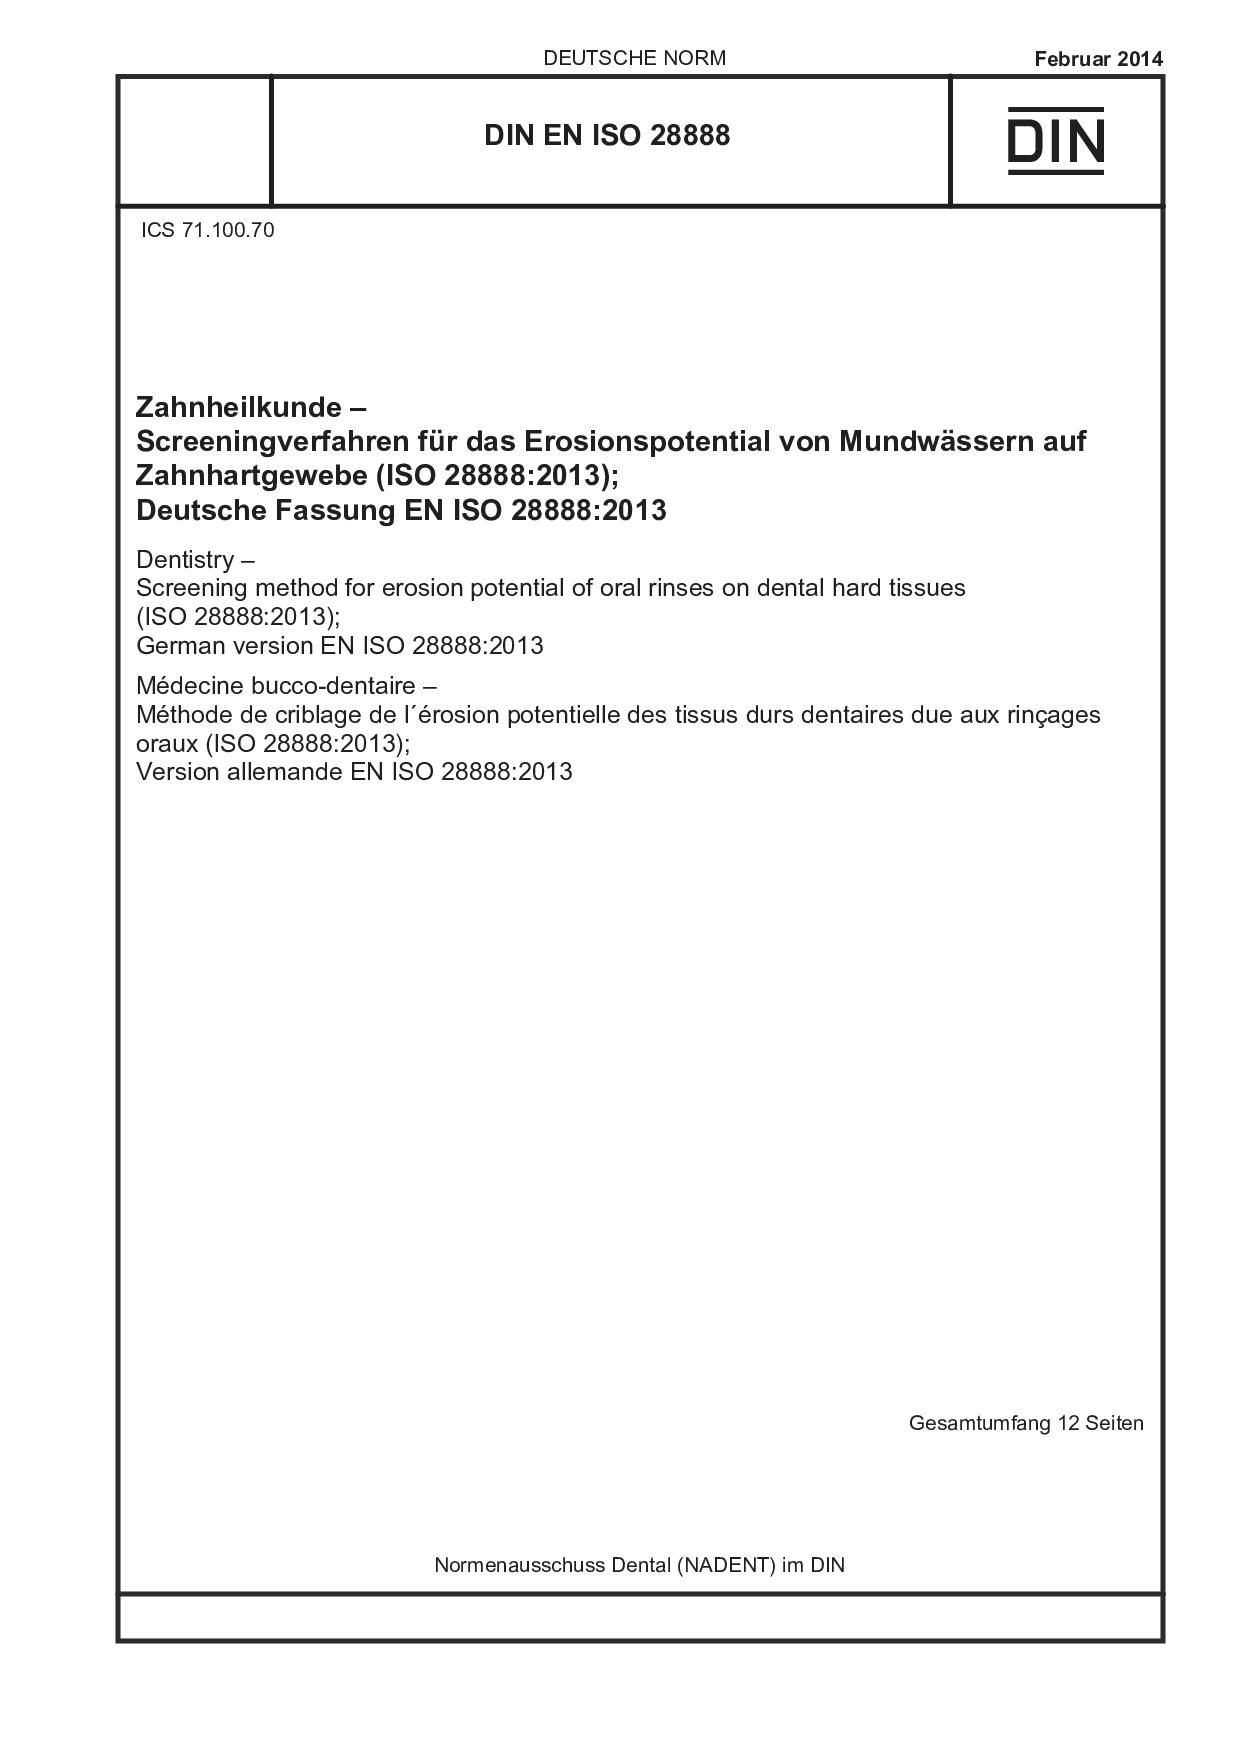 DIN EN ISO 28888:2014封面图